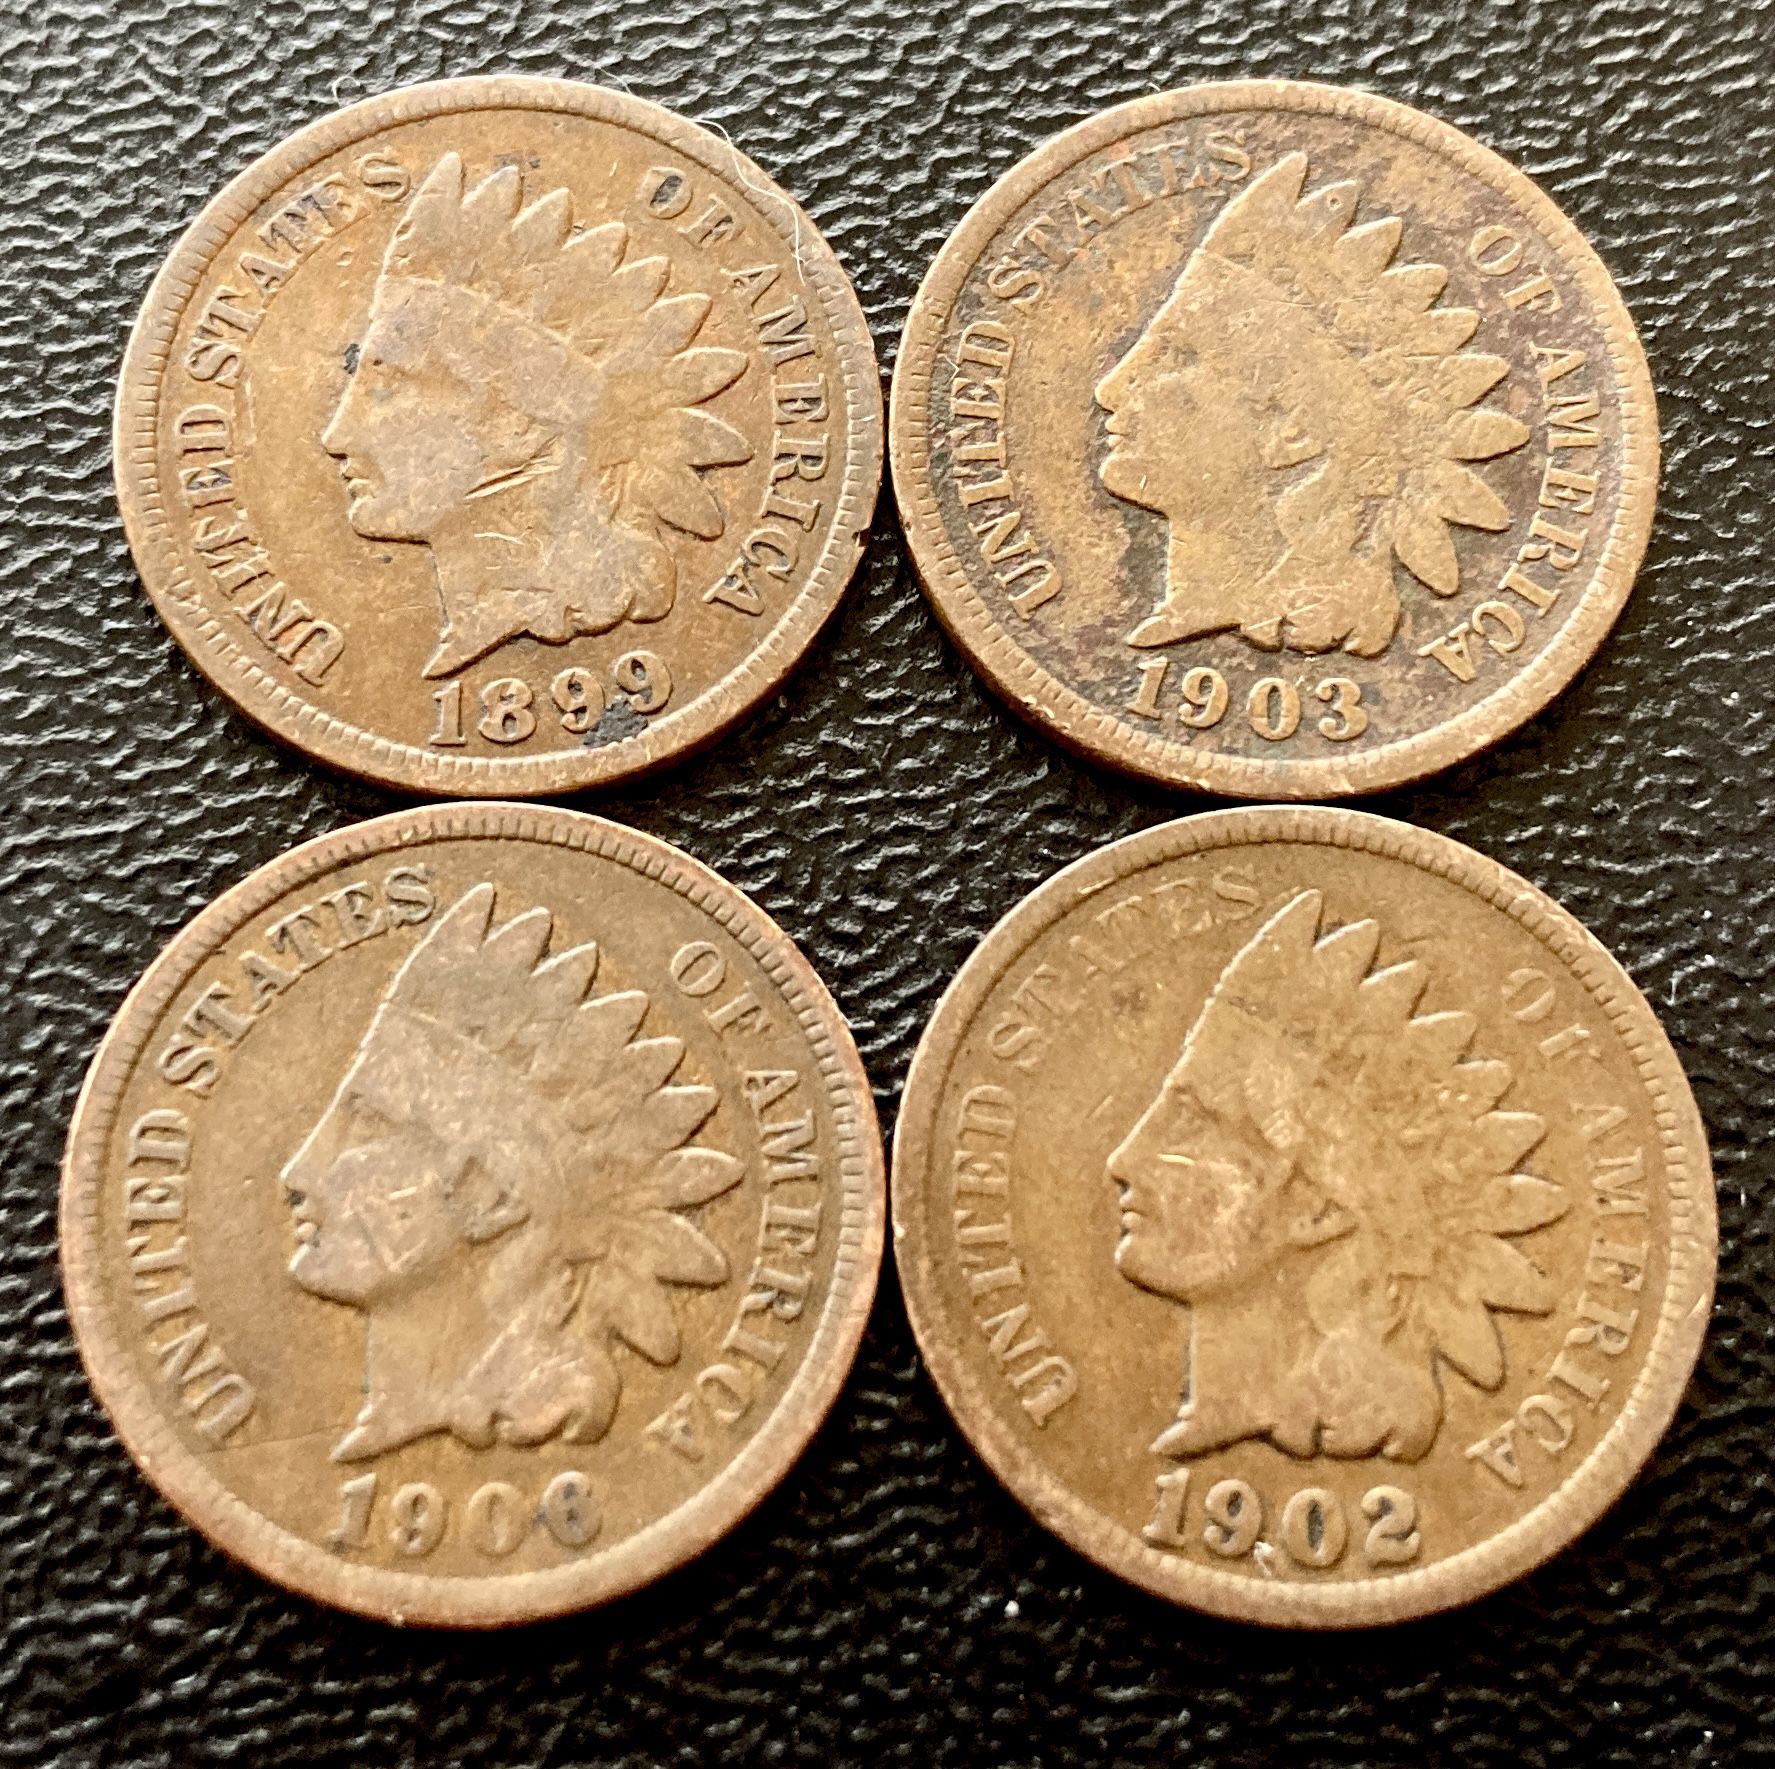 Four (4) Indian Head Pennies Vintage Antique US Cent Coins 